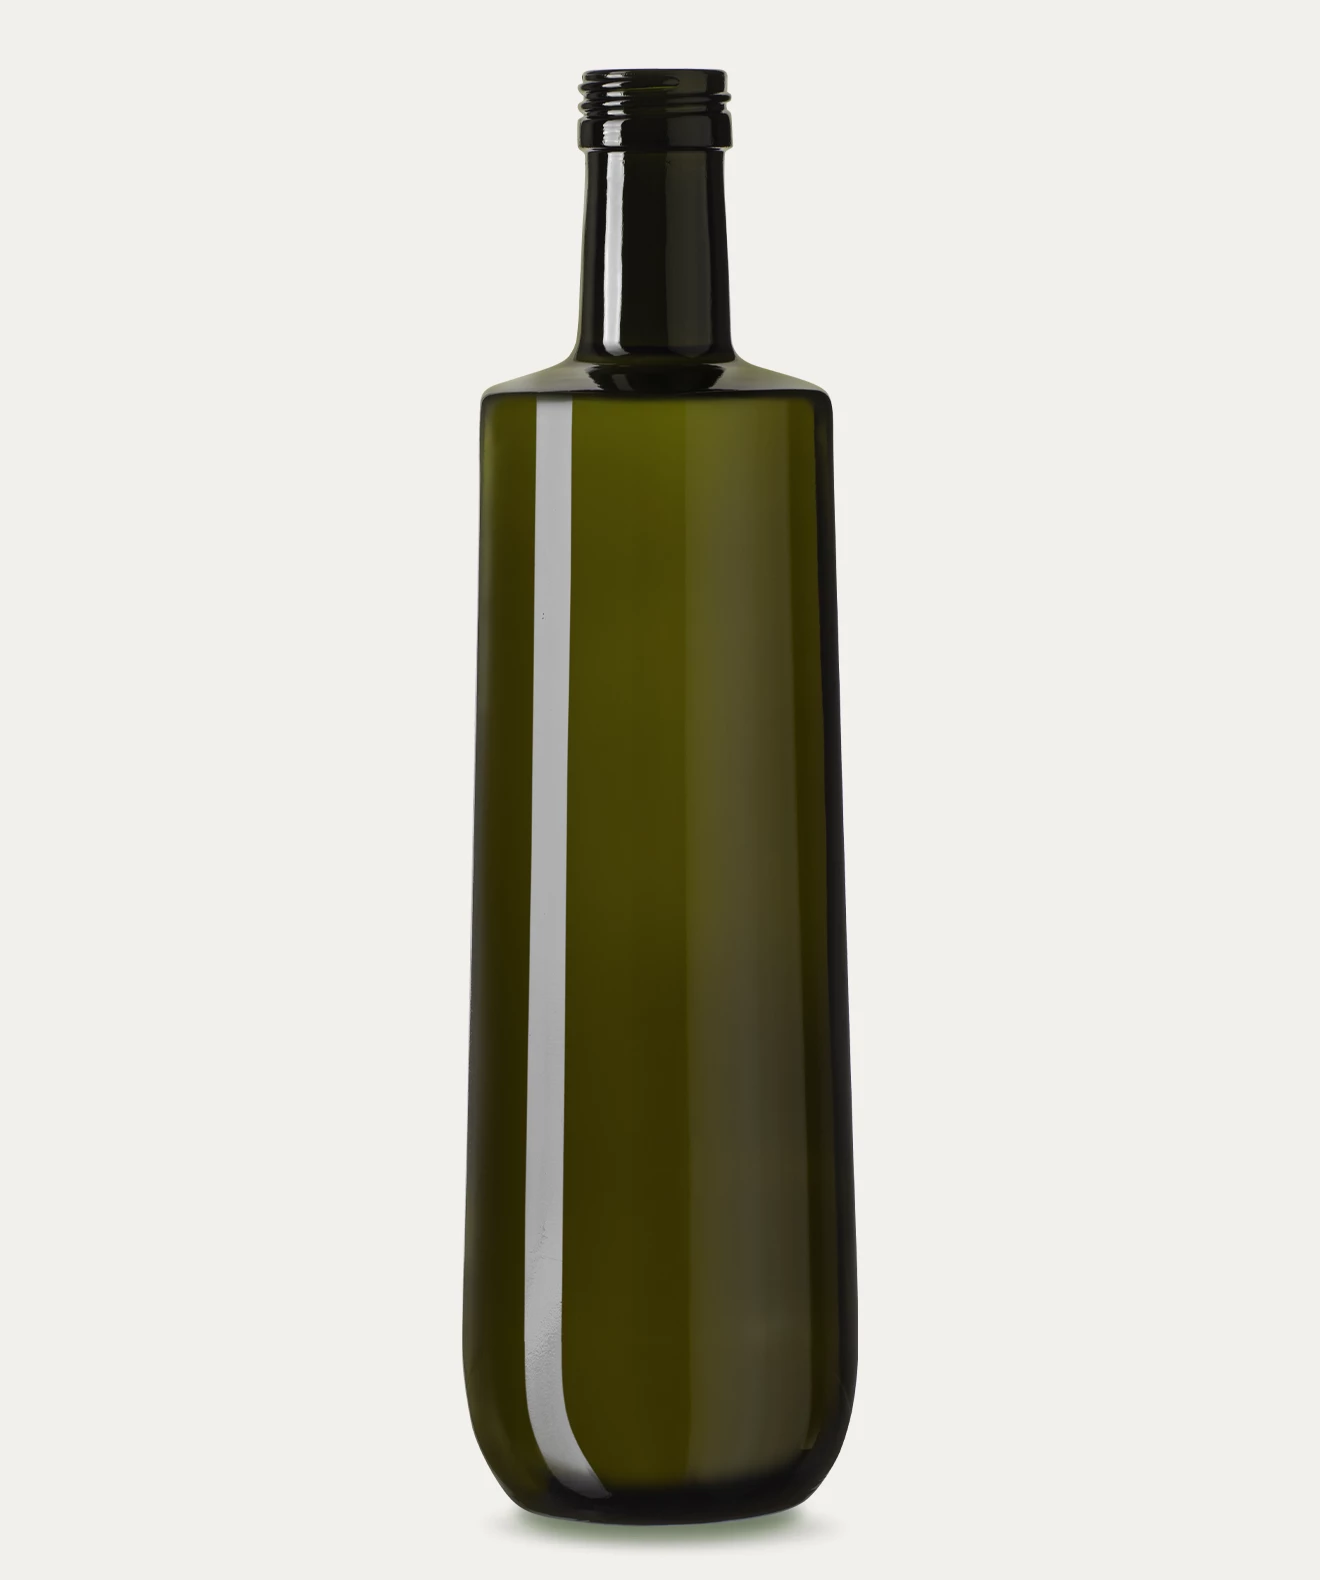 OTTAGONALE VG - Bottiglia per Olio d'oliva e Aceto - Vetroelite